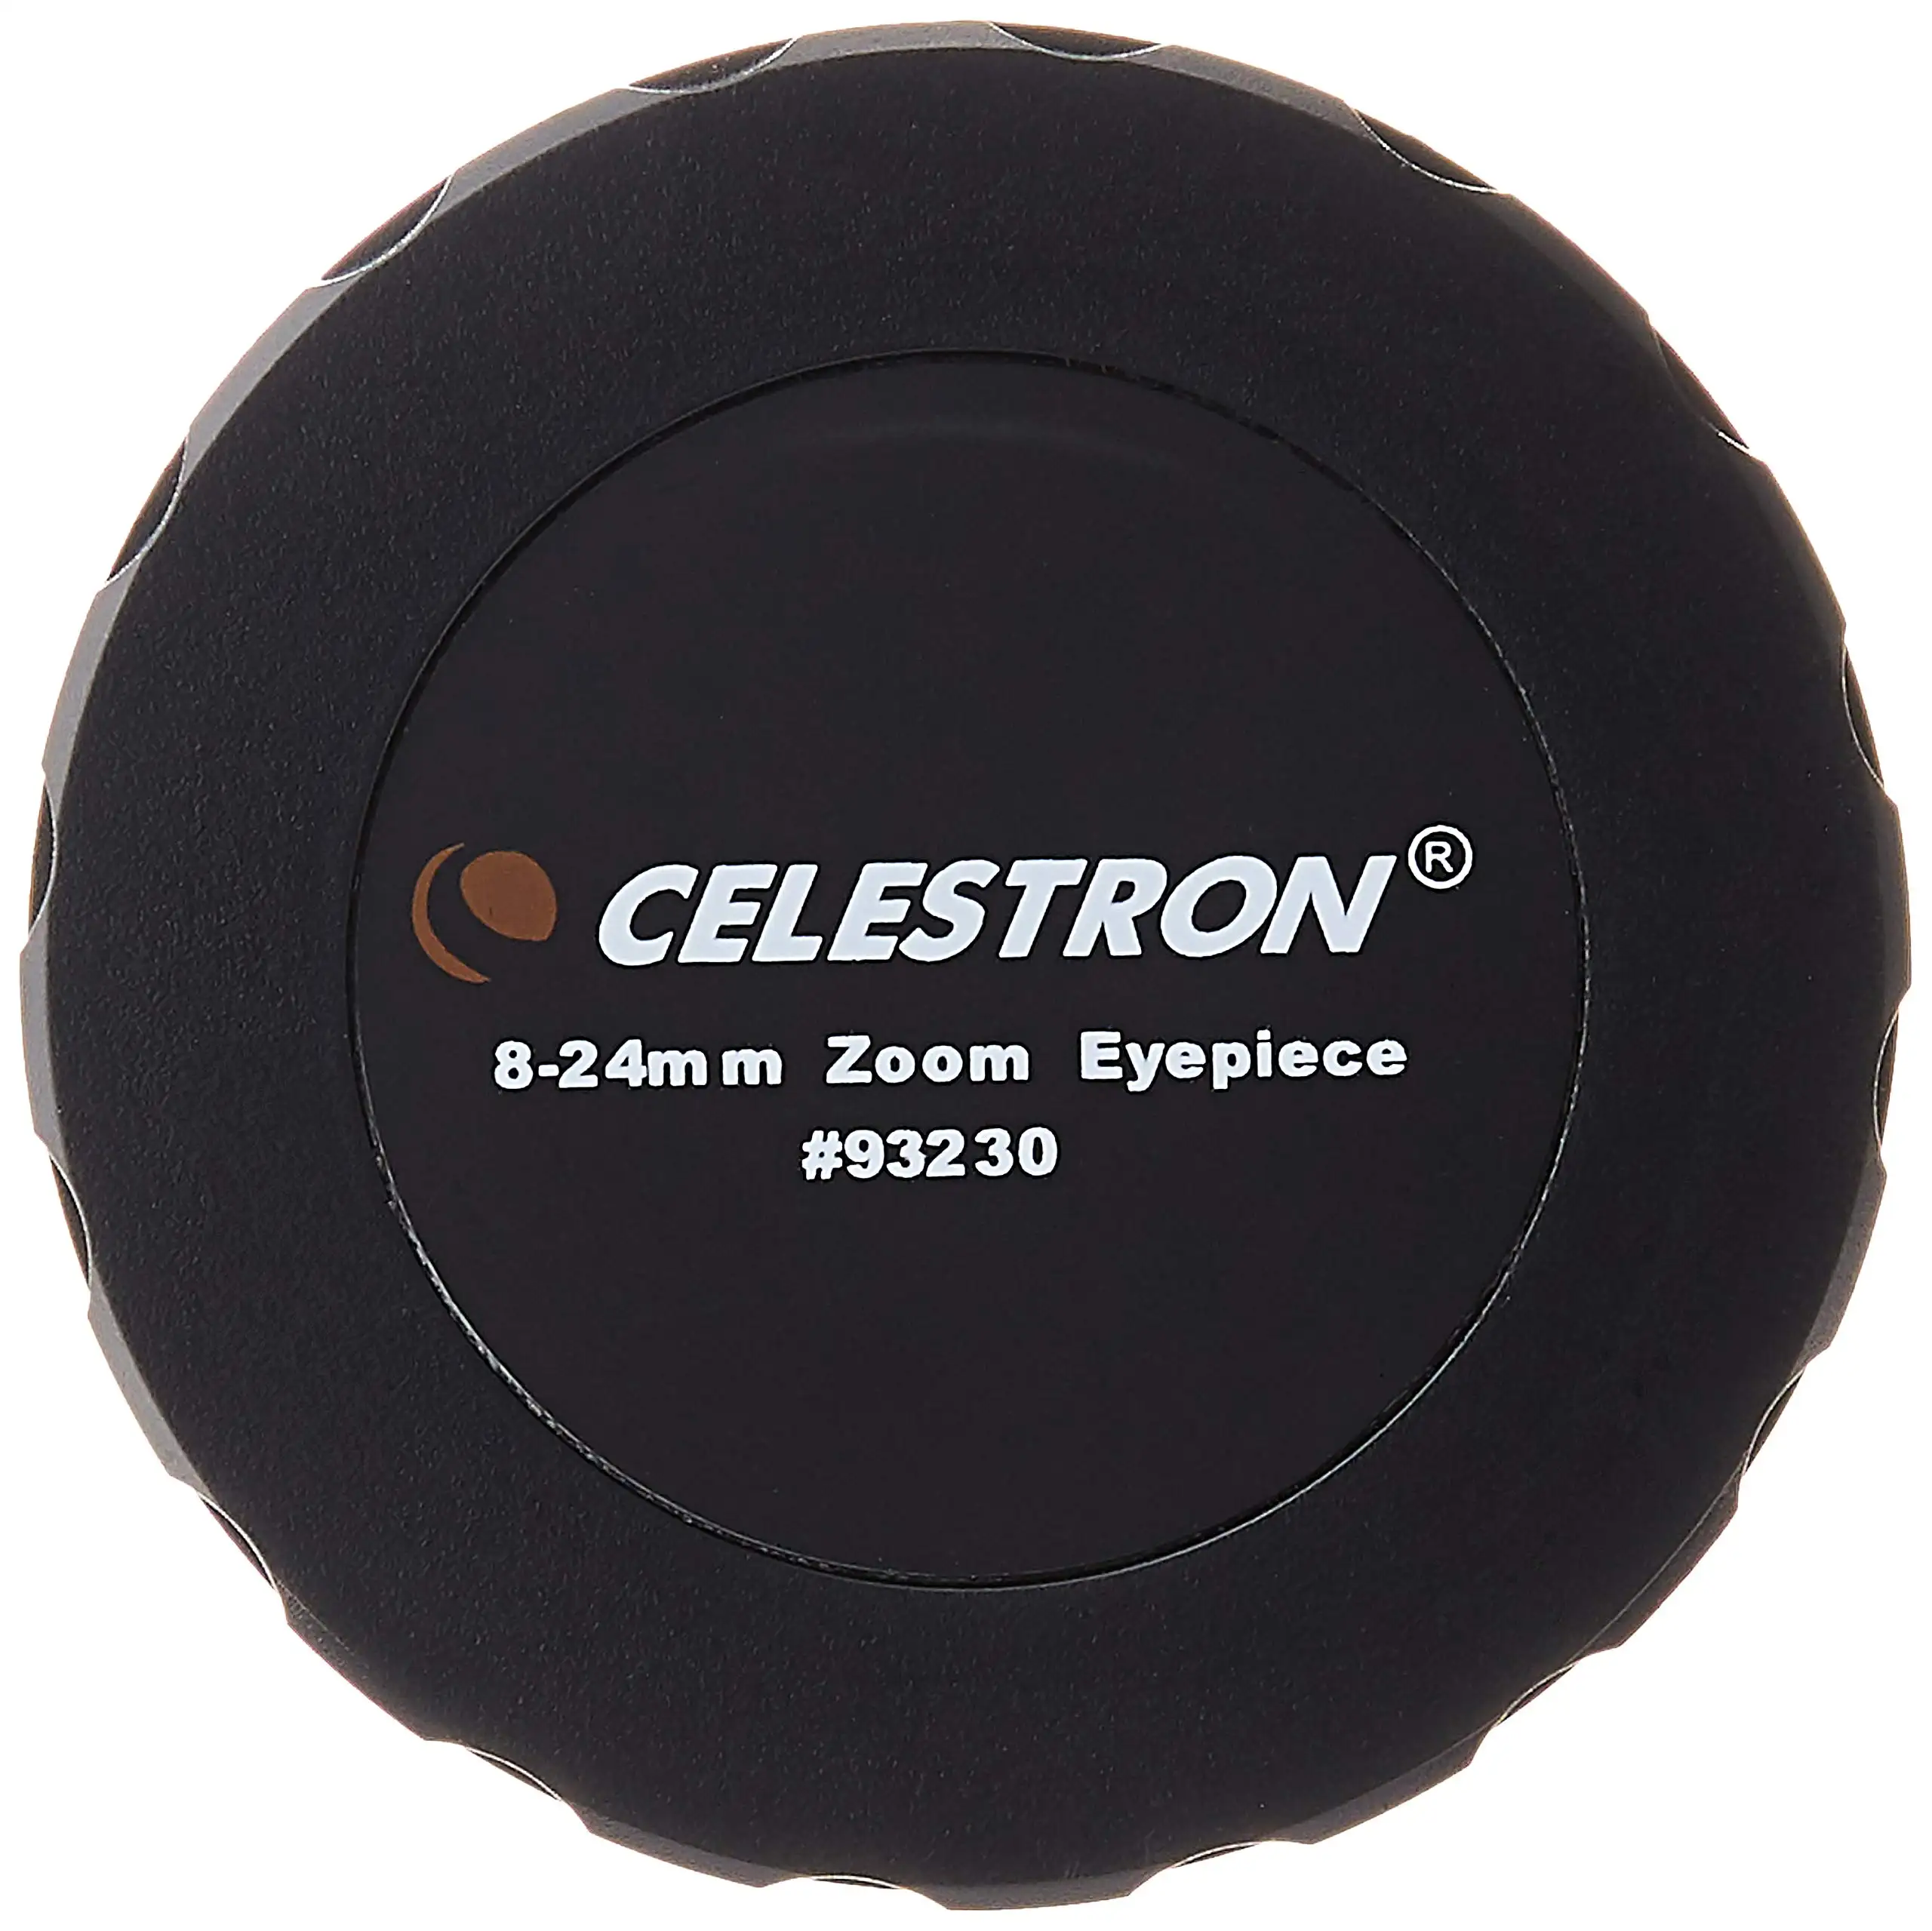 Celestron telescope Zoom